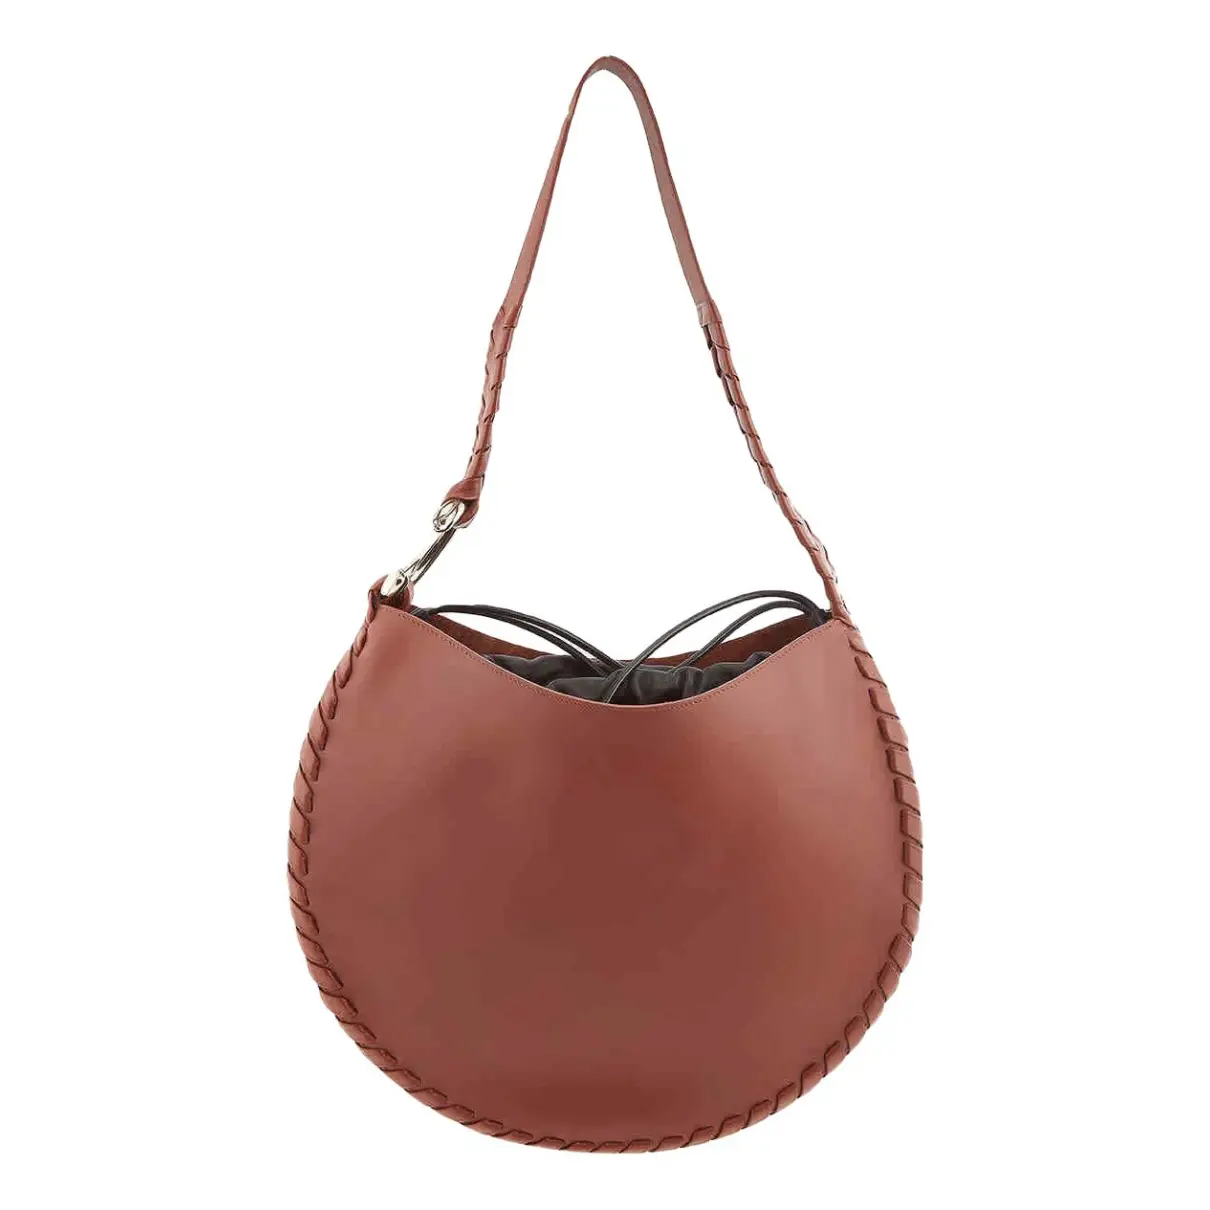 Hobo Mate leather handbag